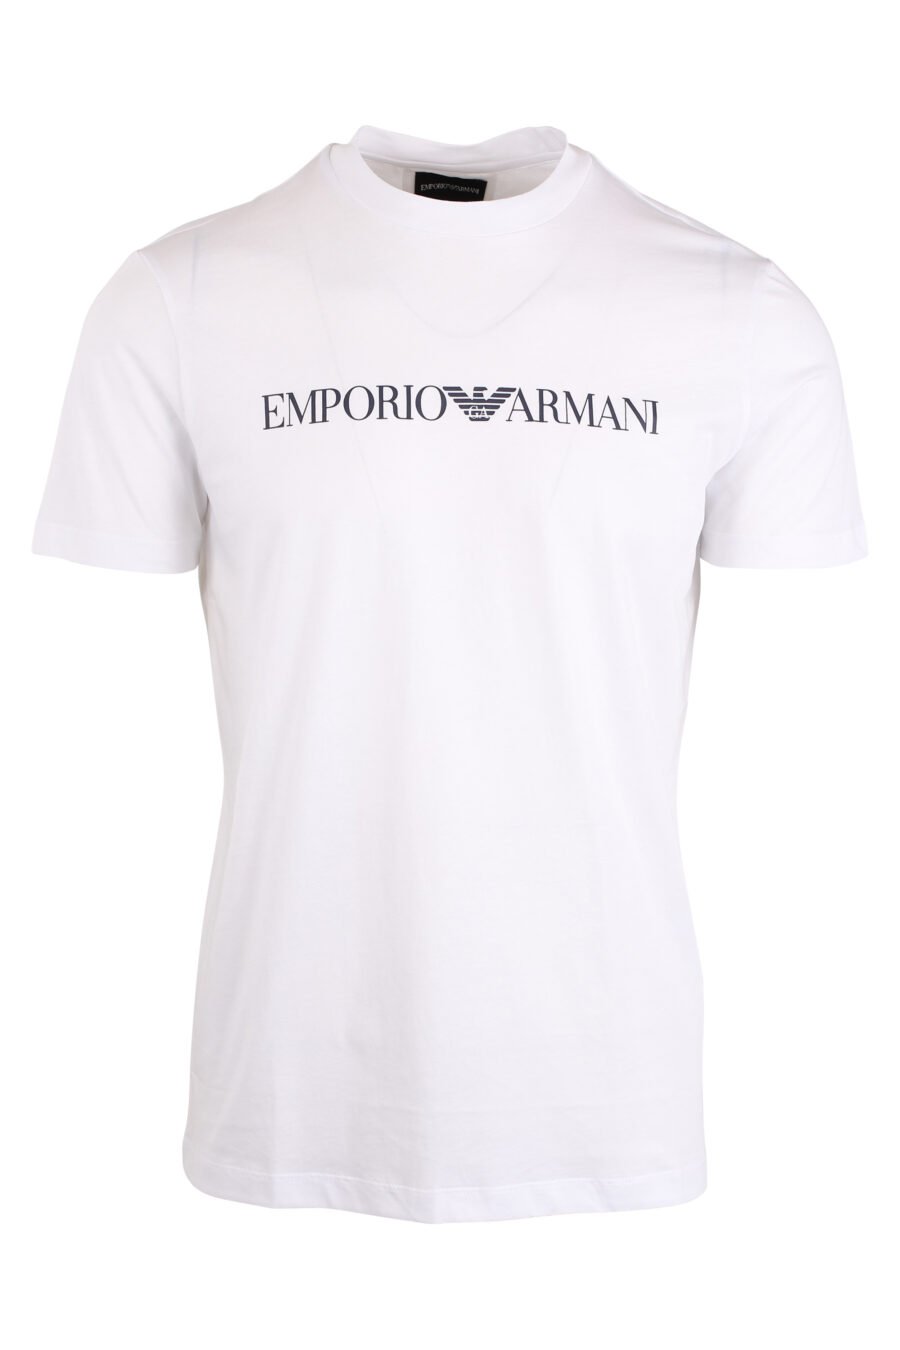 Camiseta blanca con maxilogo letras negras - IMG 4271